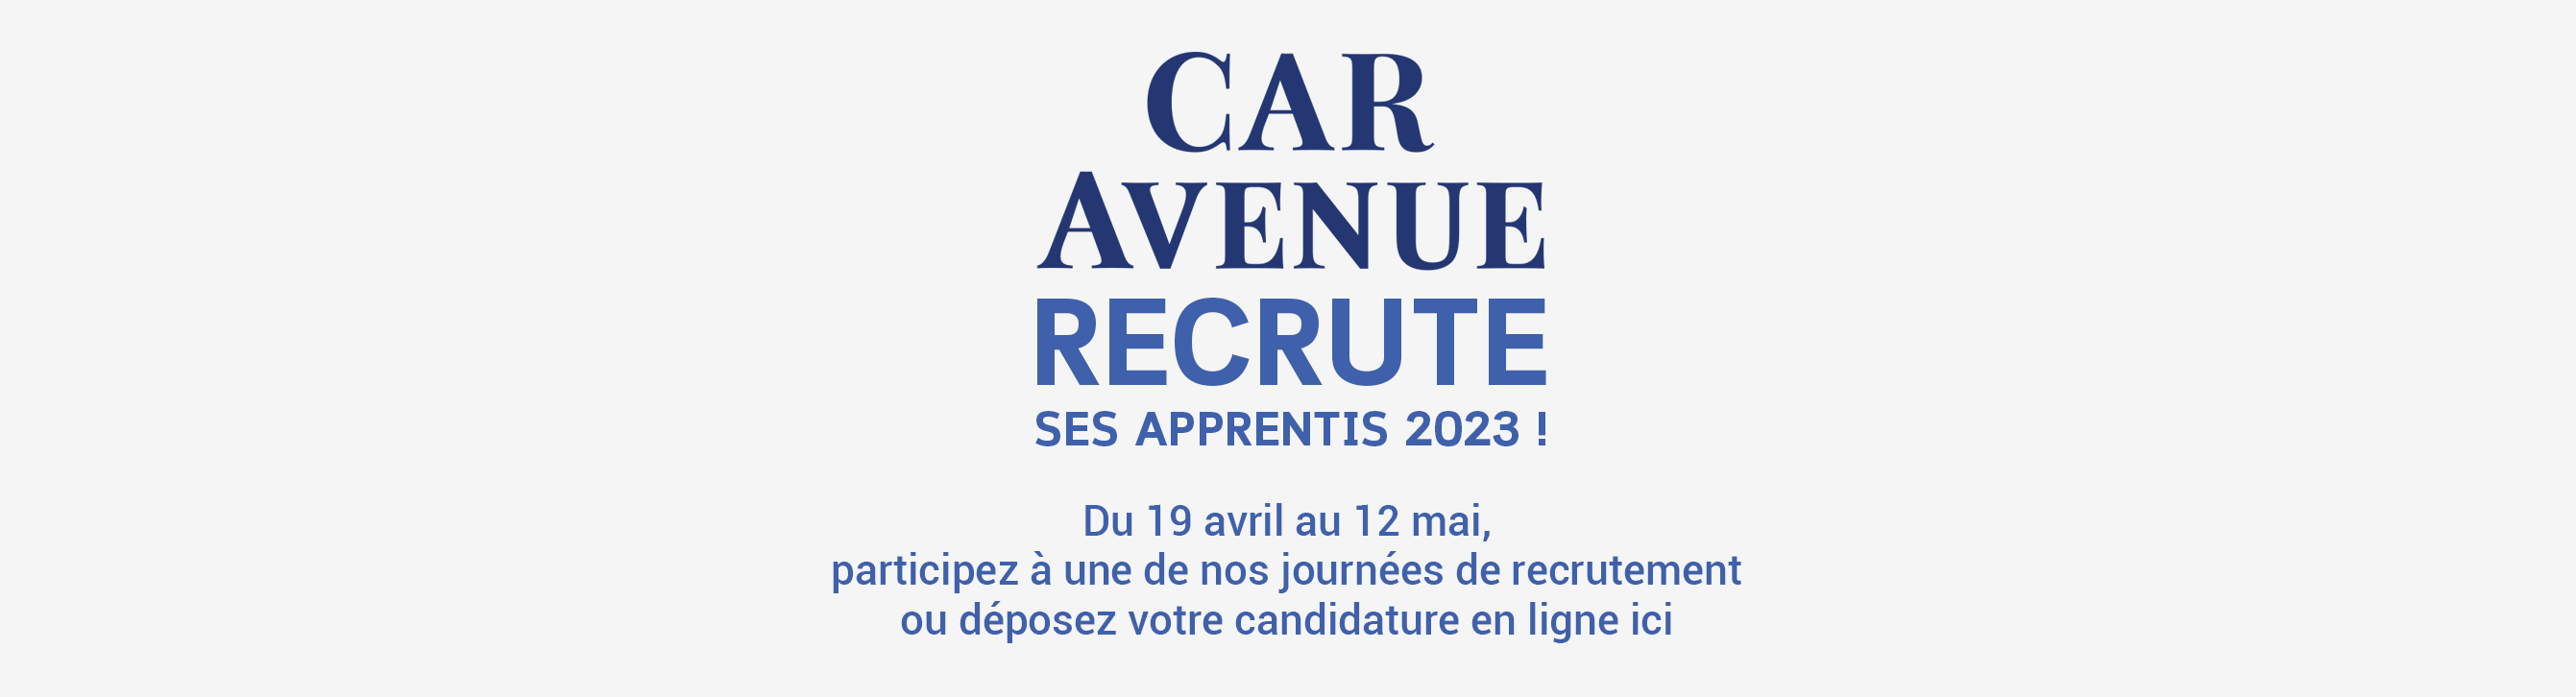 Page-d'accueil-site-CAR-Avenue-recrutement-apprentis-2023.png